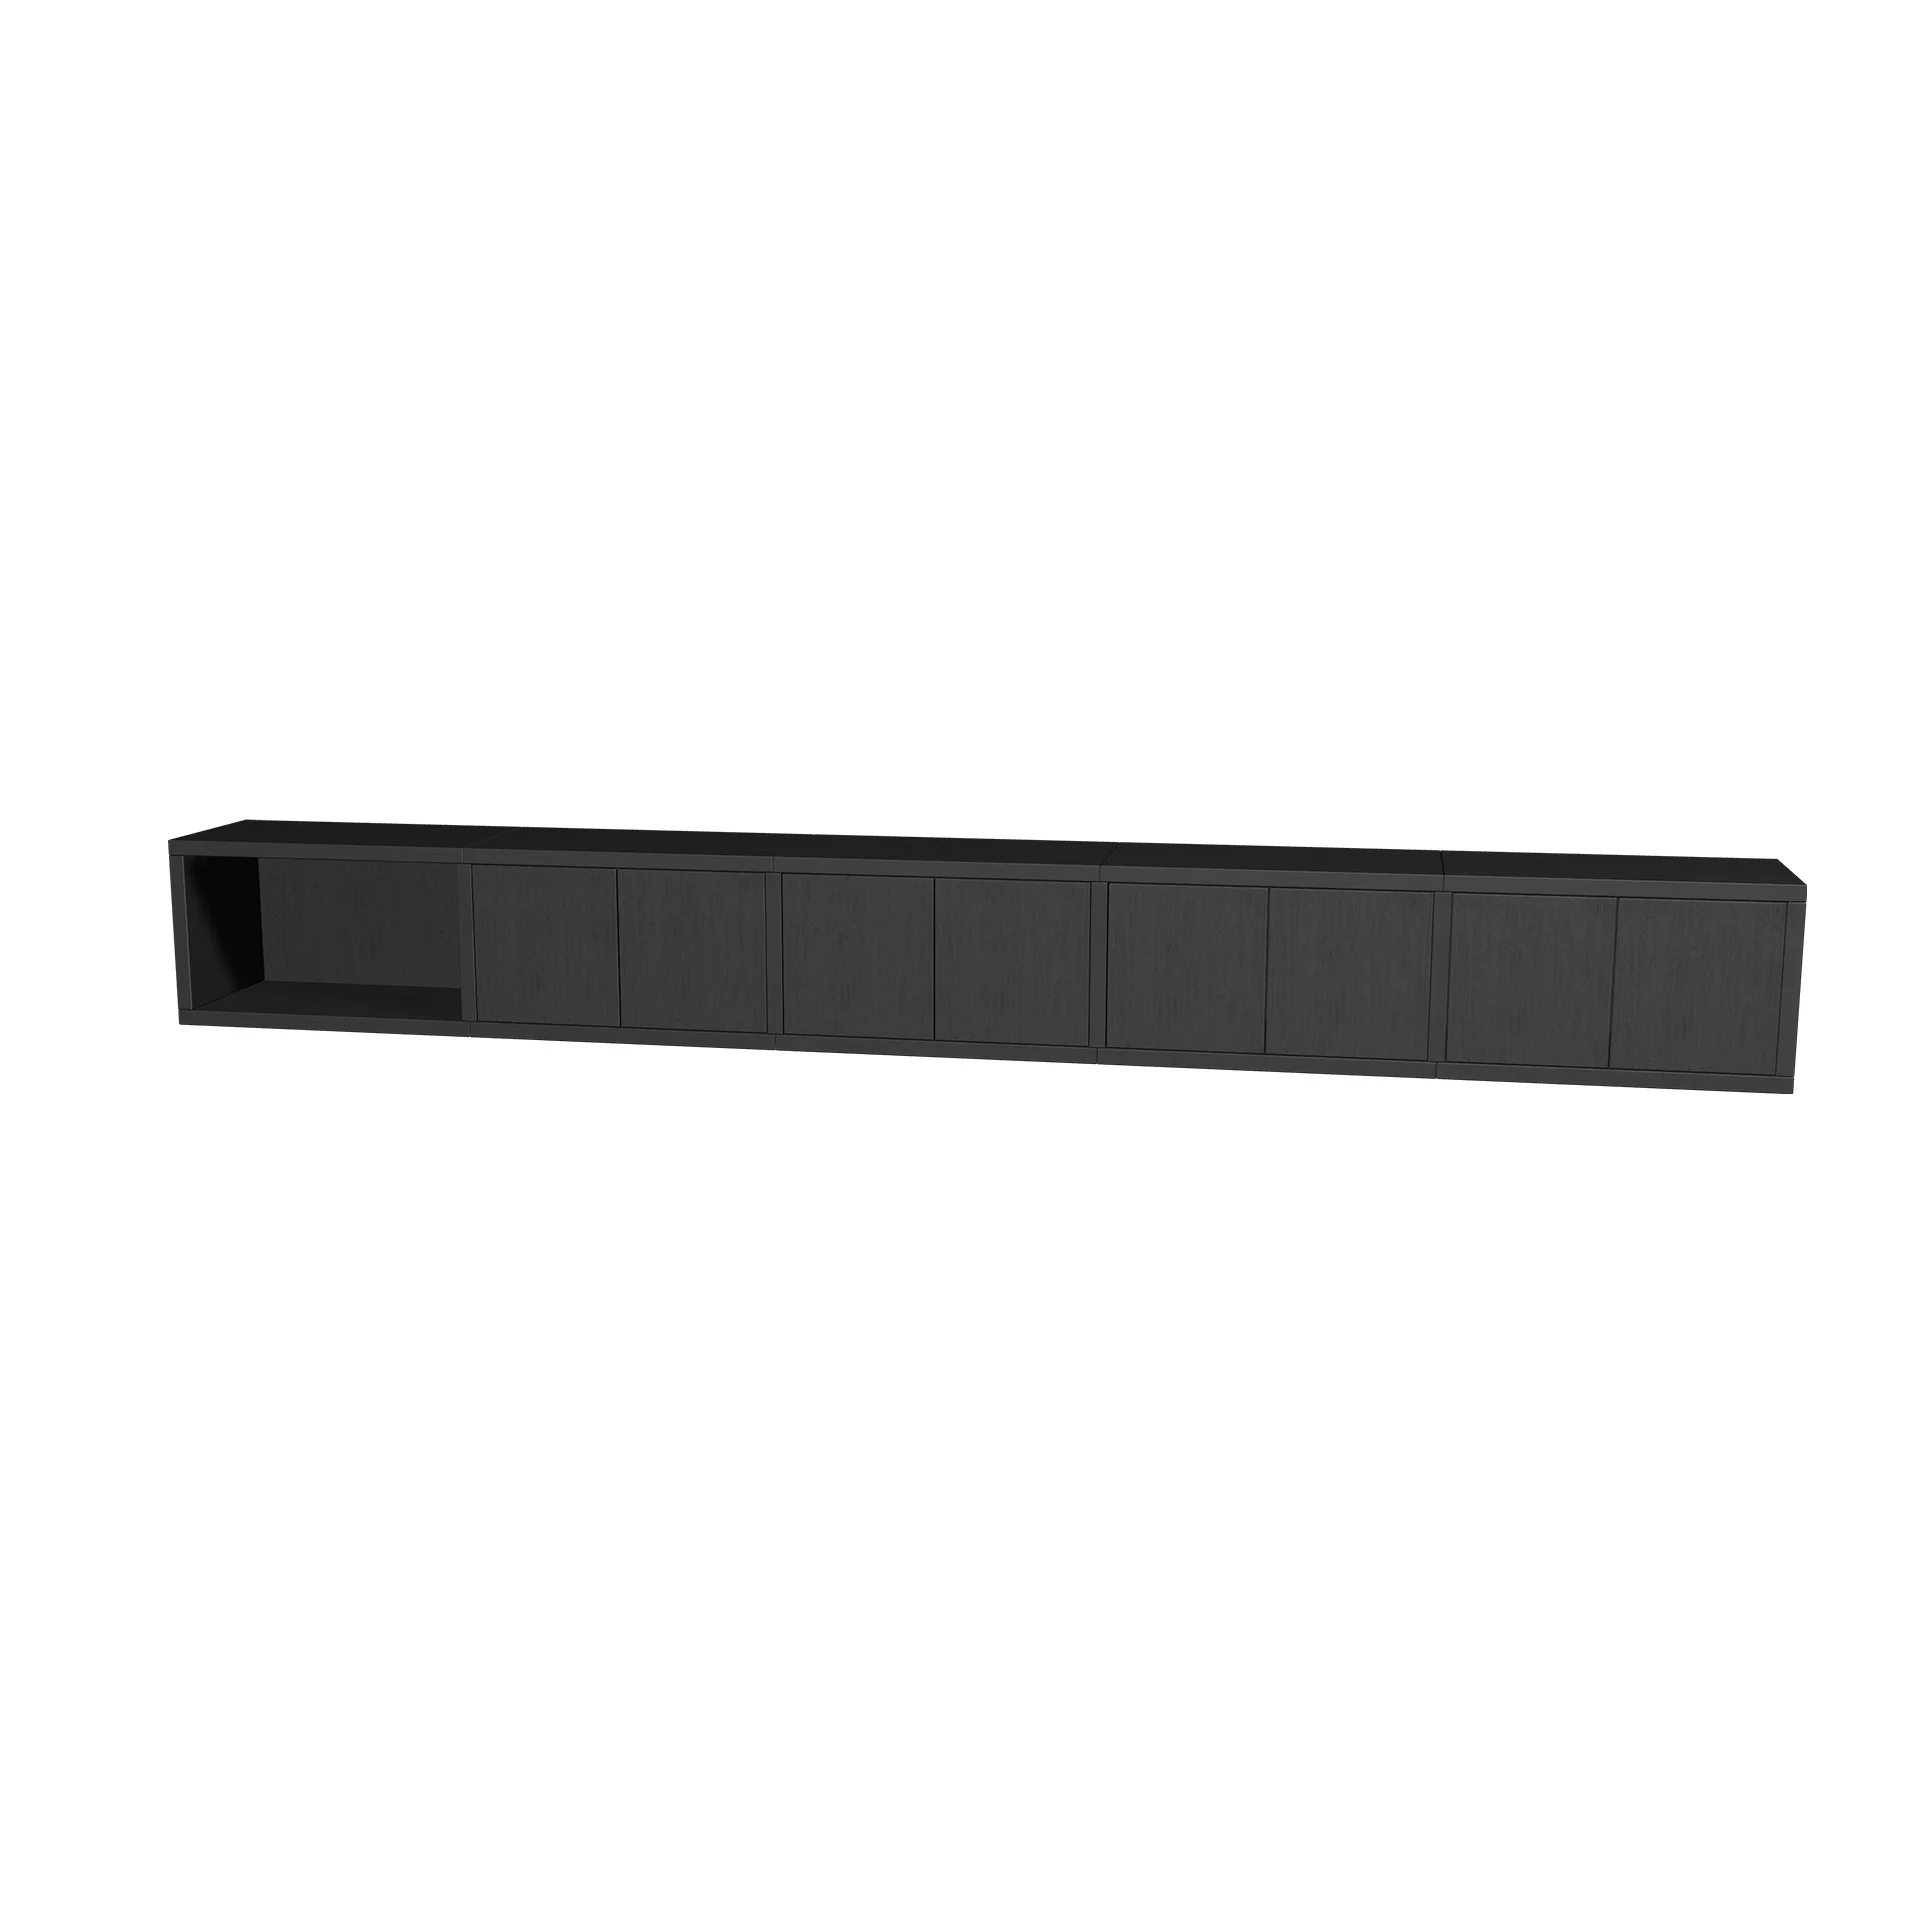 TSFC013 in black oak furniture board